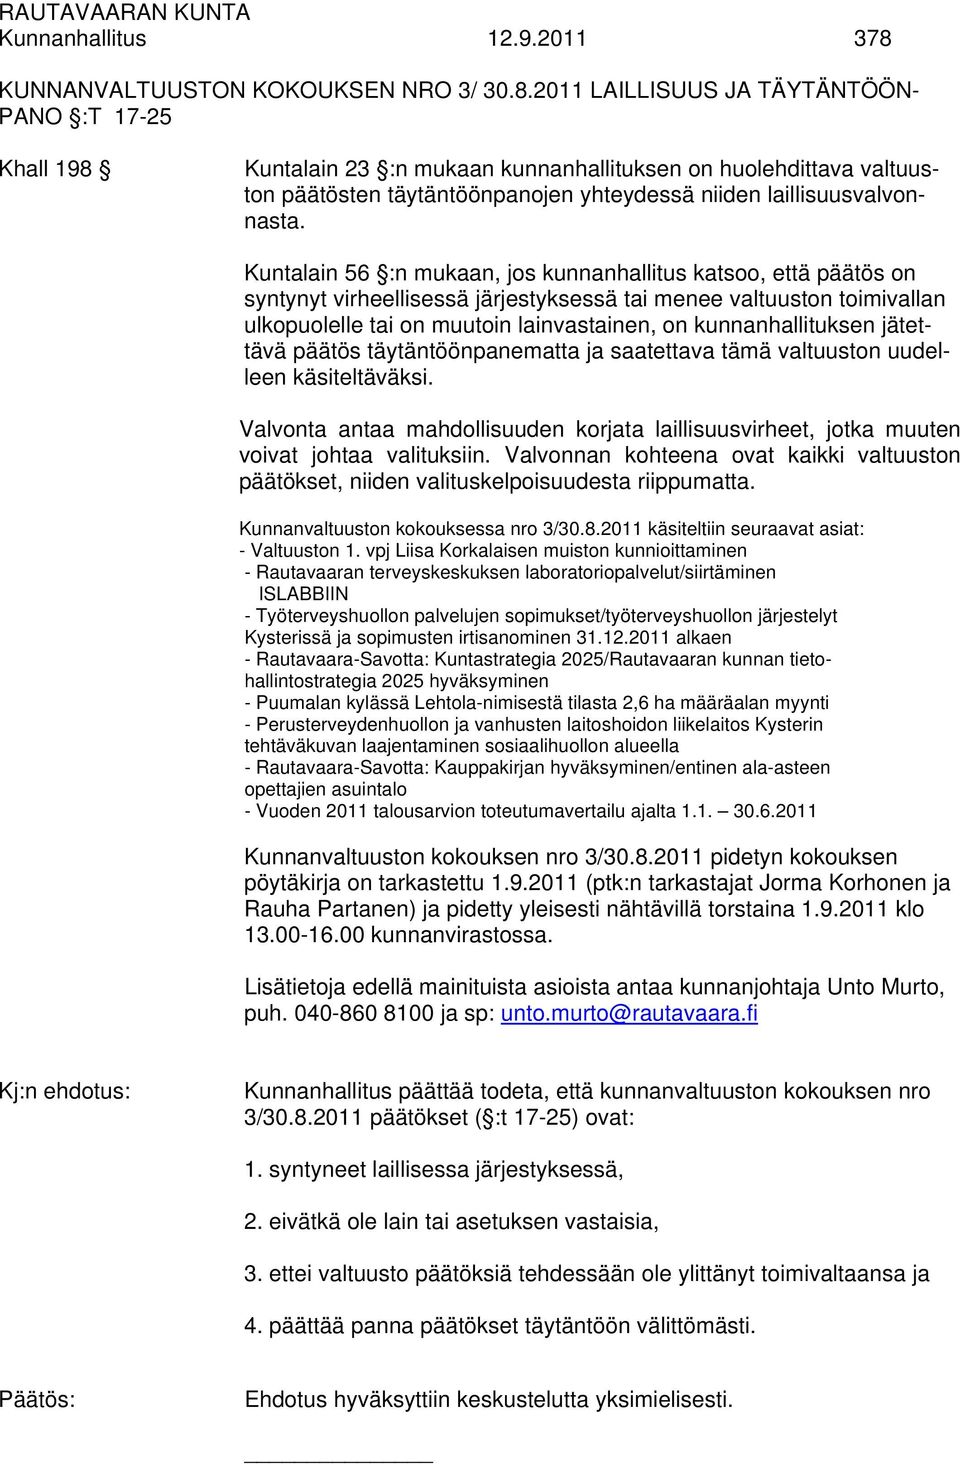 2011 LAILLISUUS JA TÄYTÄNTÖÖN- PANO :T 17-25 Khall 198 Kuntalain 23 :n mukaan kunnanhallituksen on huolehdittava valtuuston päätösten täytäntöönpanojen yhteydessä niiden laillisuusvalvonnasta.